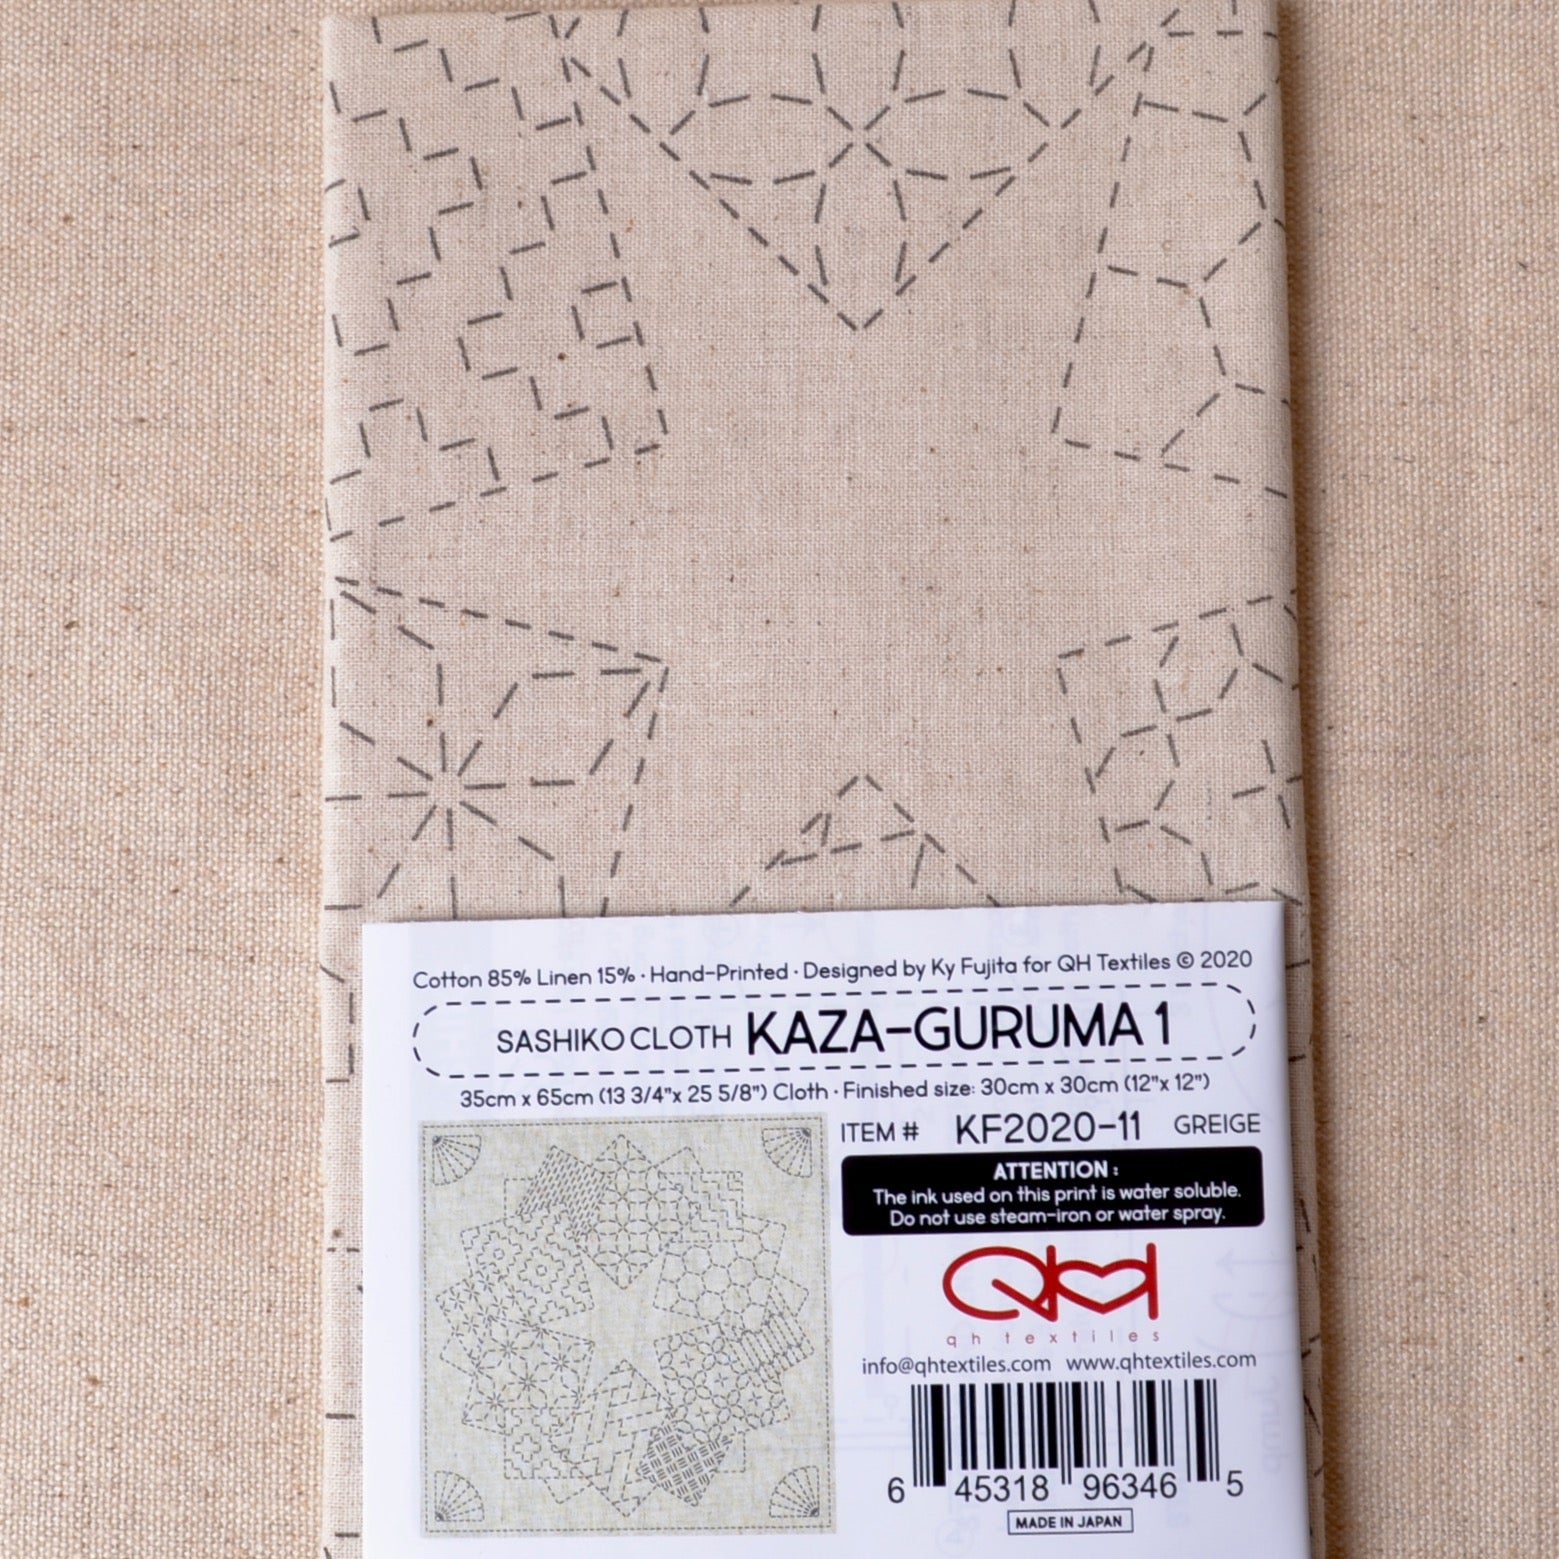 Sashiko Cloth - Kaza-Guruma 1